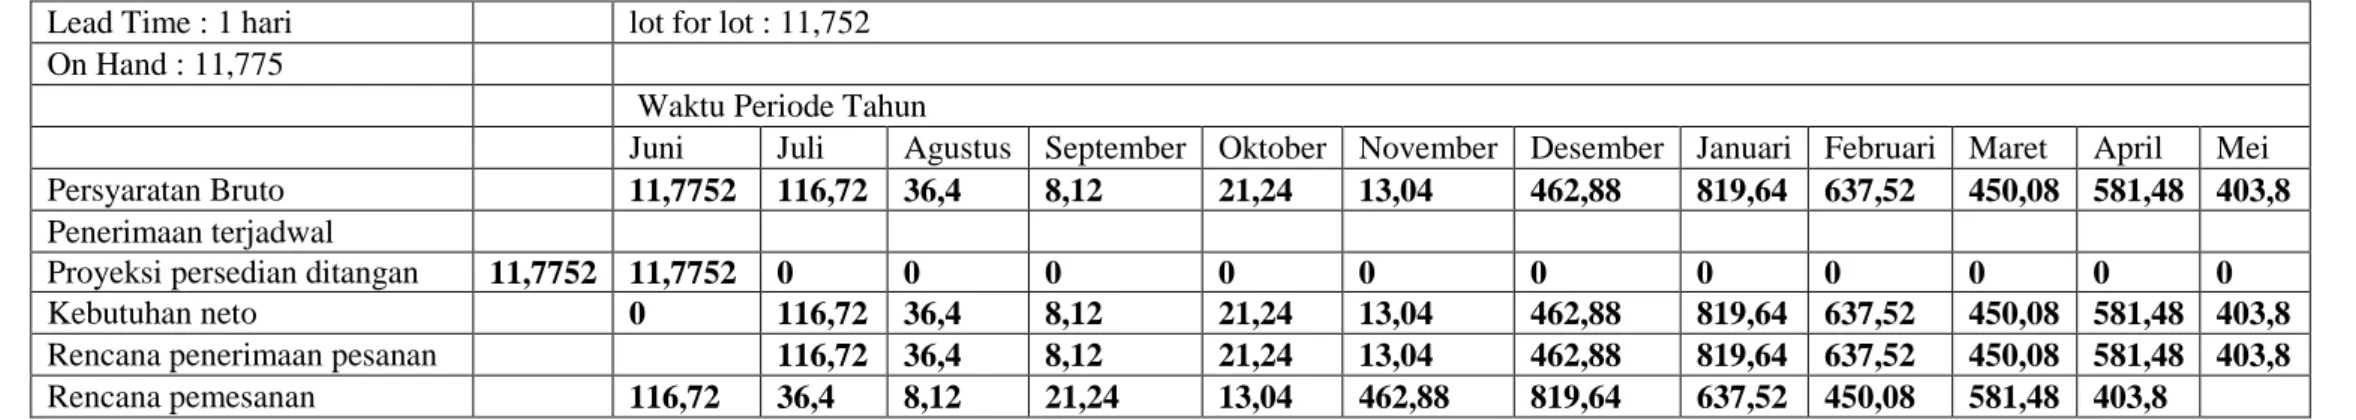 Tabel 3. MRP Teknik Lot For Lot  Lead Time : 1 hari     lot for lot : 11,752 